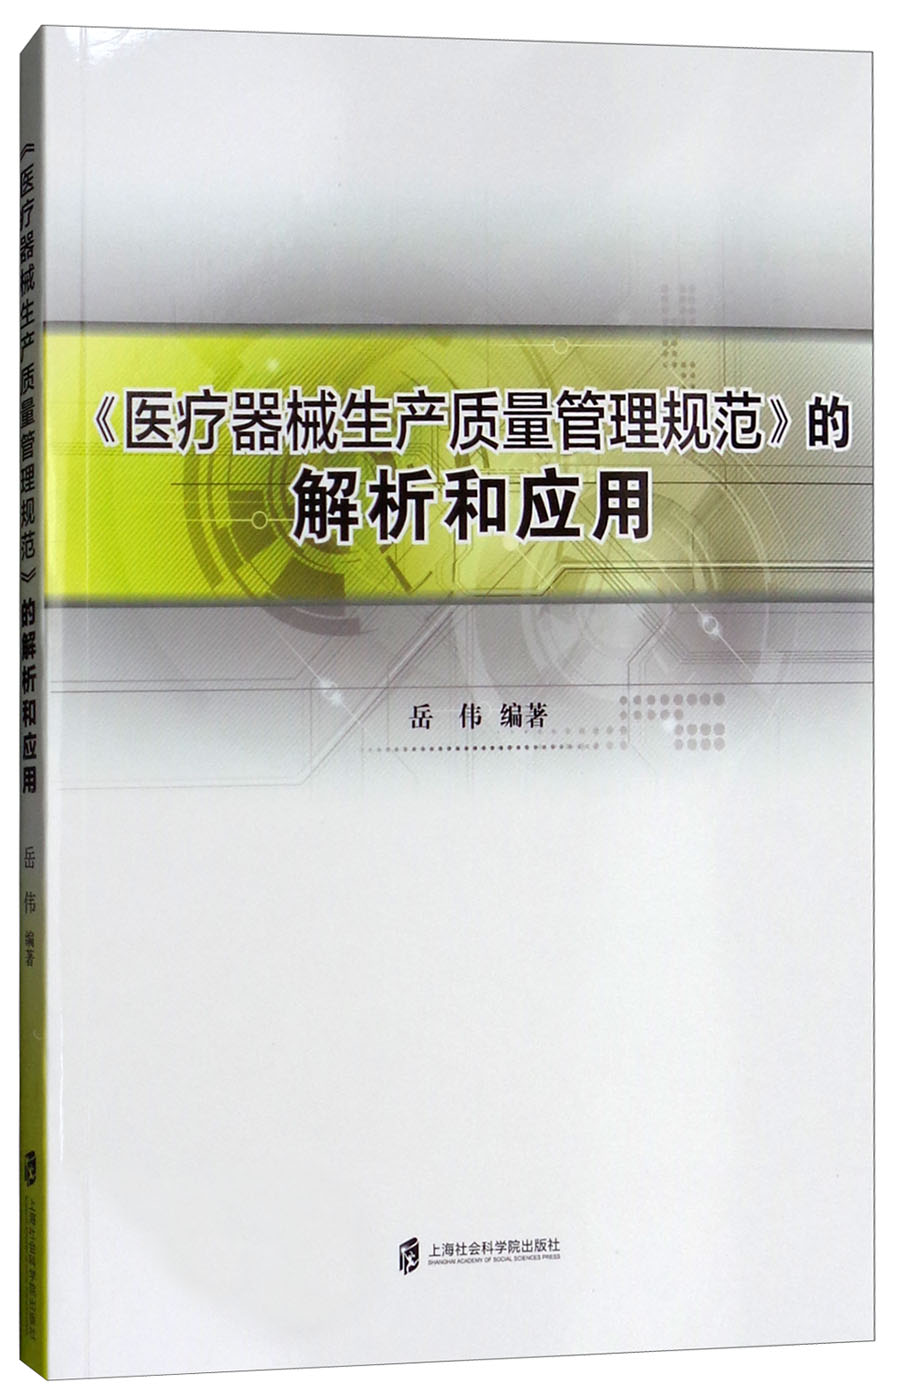 《医疗器械生产质量管理规范》的解析和应用岳伟9787552009309 mobi格式下载